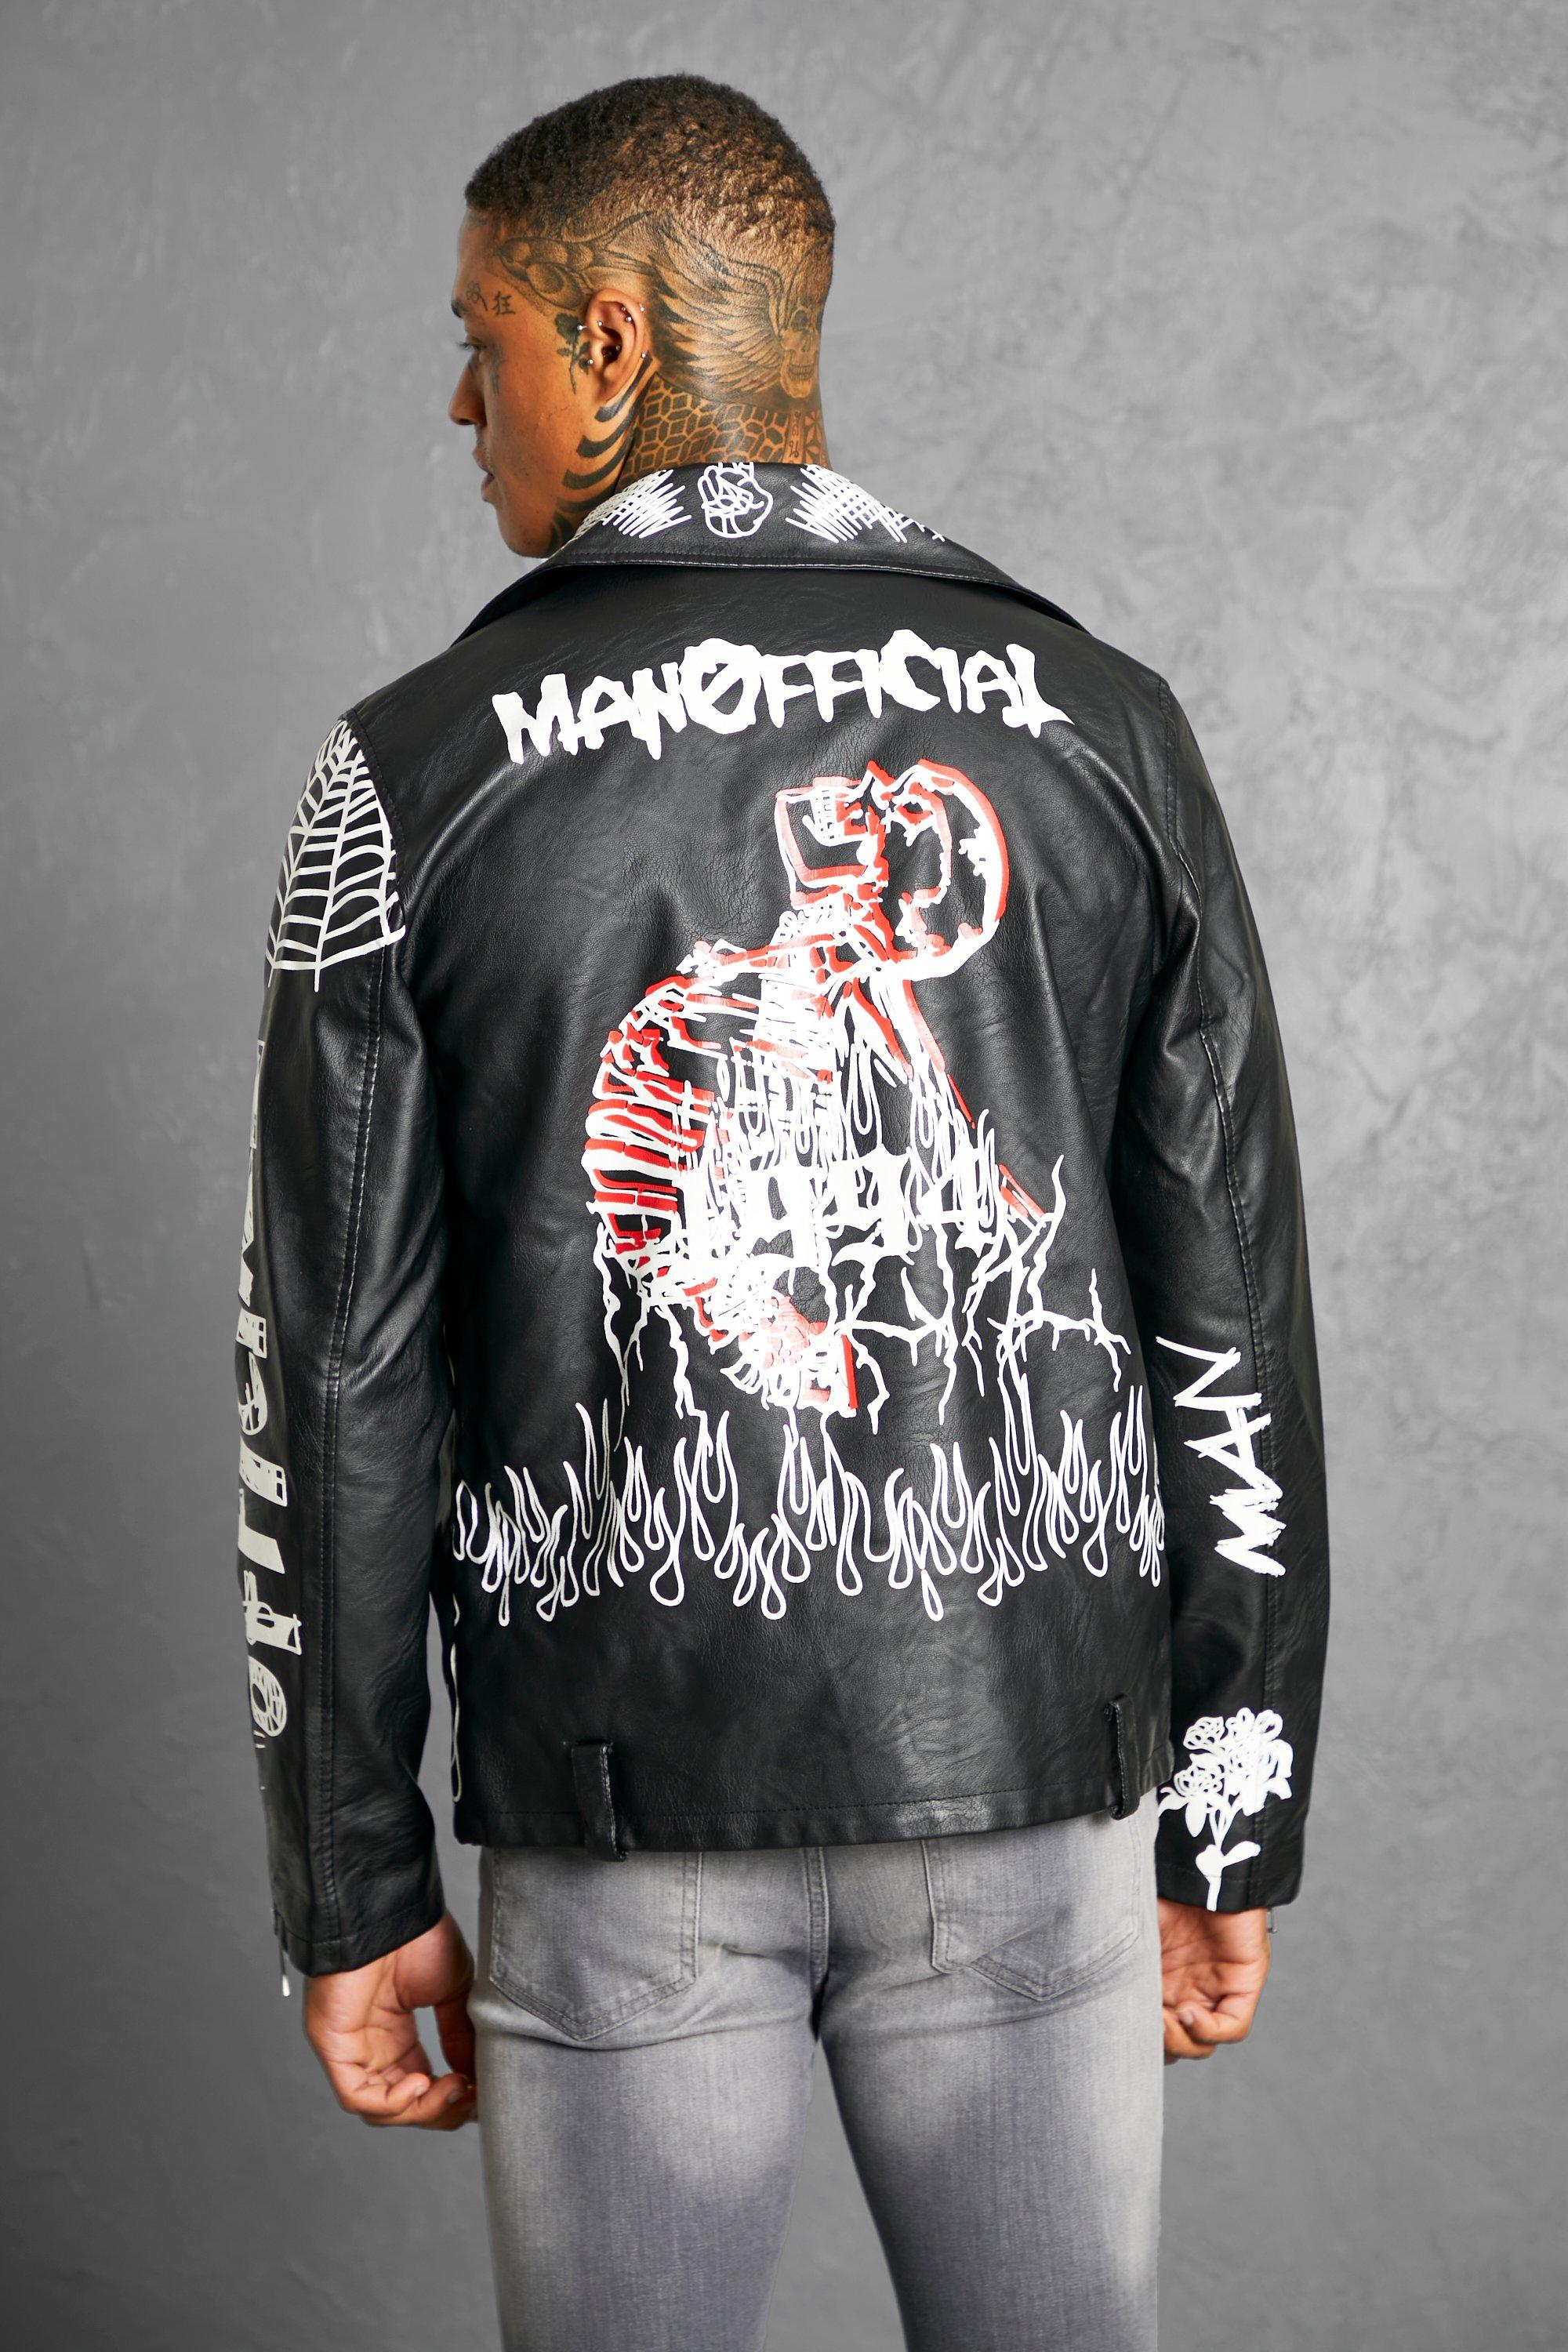 All Graffiti Moto Jacket USA